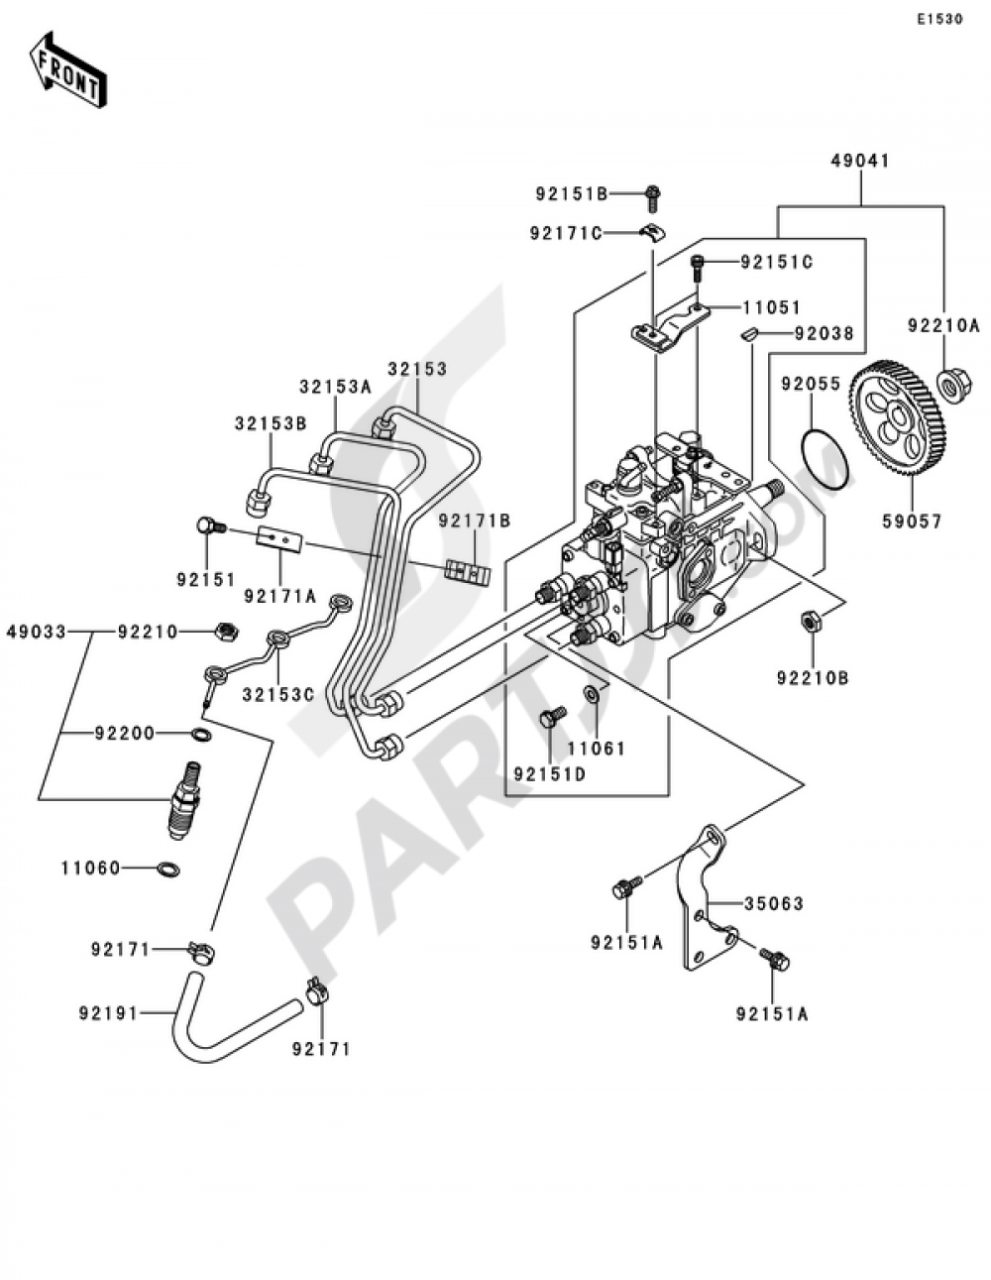 Kawasaki Mule 4010 Wiring Diagram